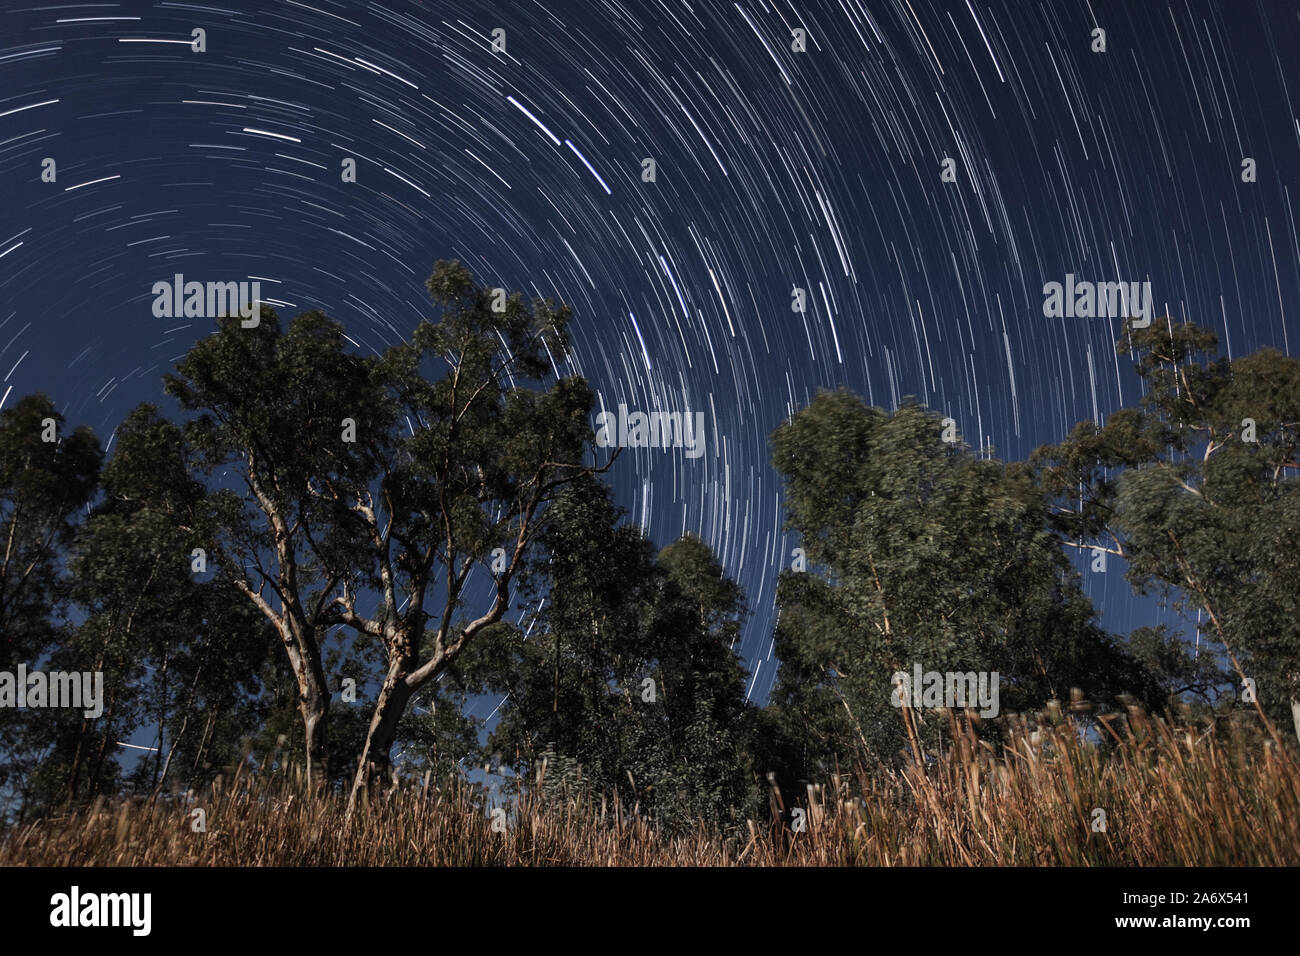 Stelle trailing nel cielo notturno con alberi in primo piano illuminati dalla luna, fotografato in Australia Foto Stock